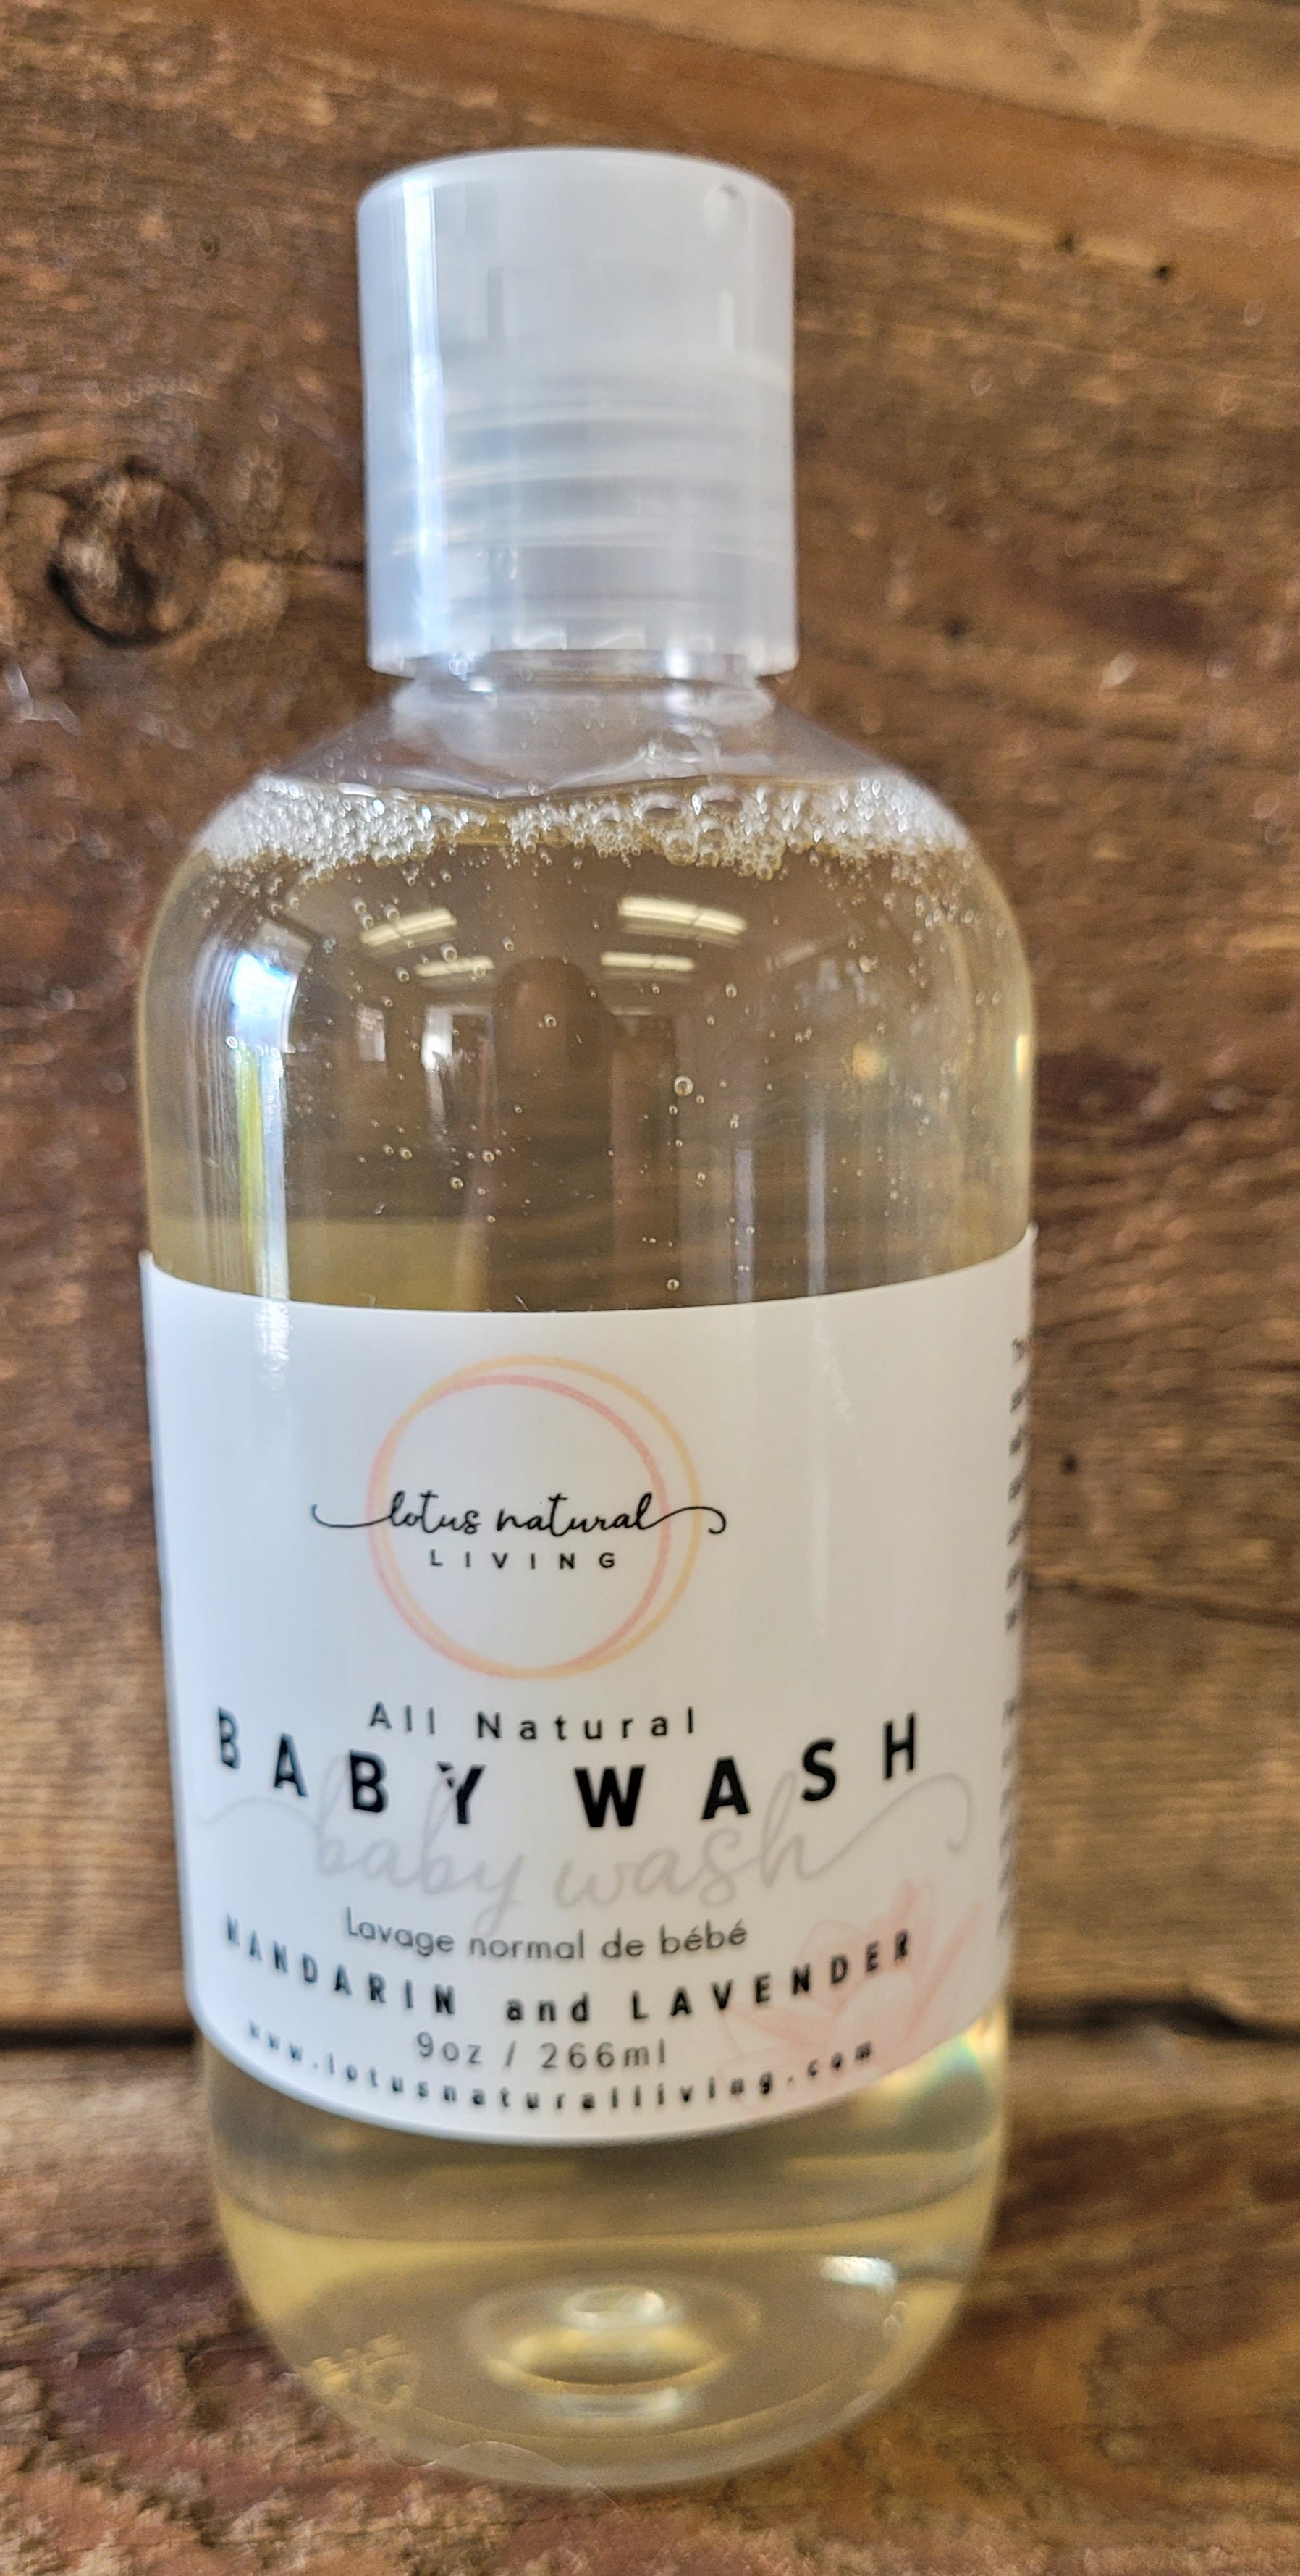 All Natural Baby Wash